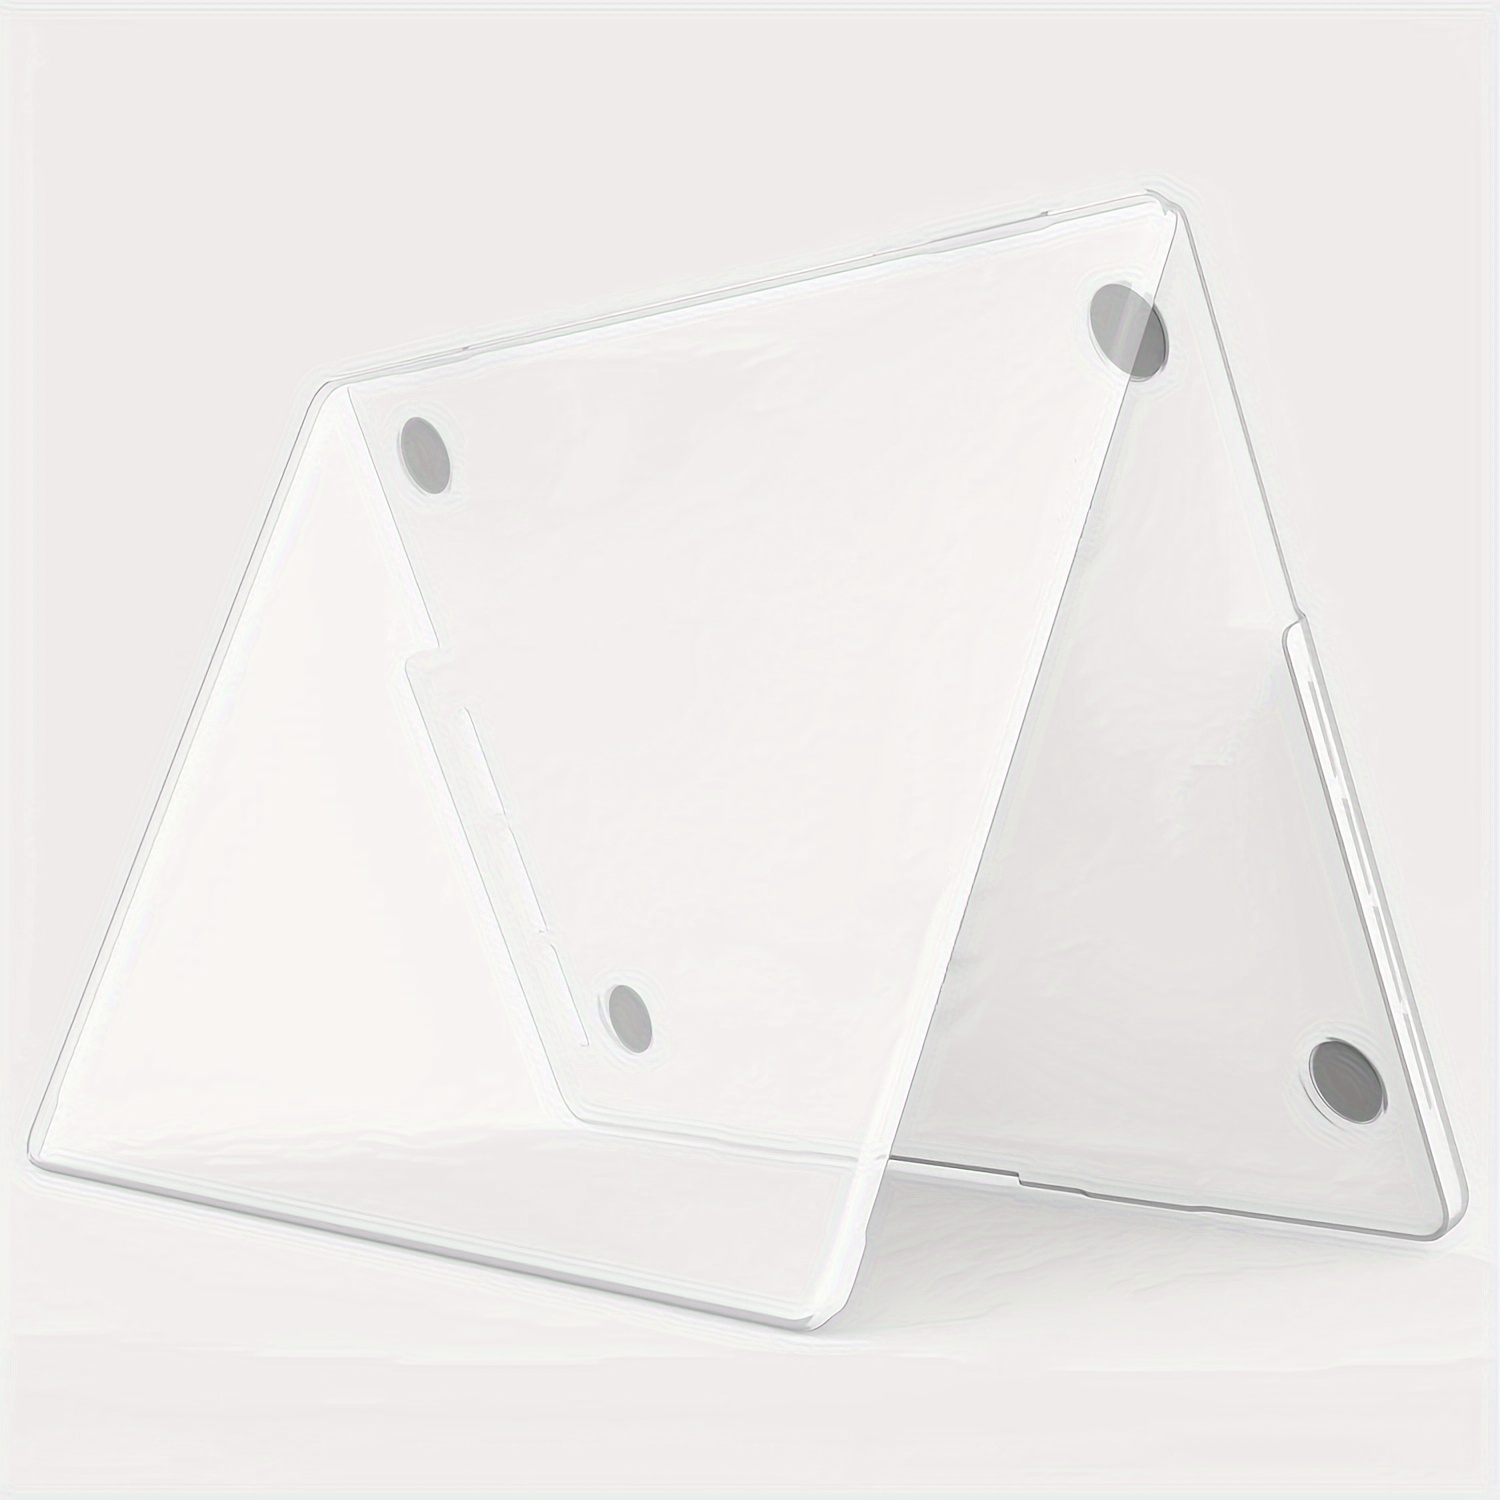 Coque pour Macbook Air 13 pouces - Coque Rigide Ultrathin Transparente -  Coque pour